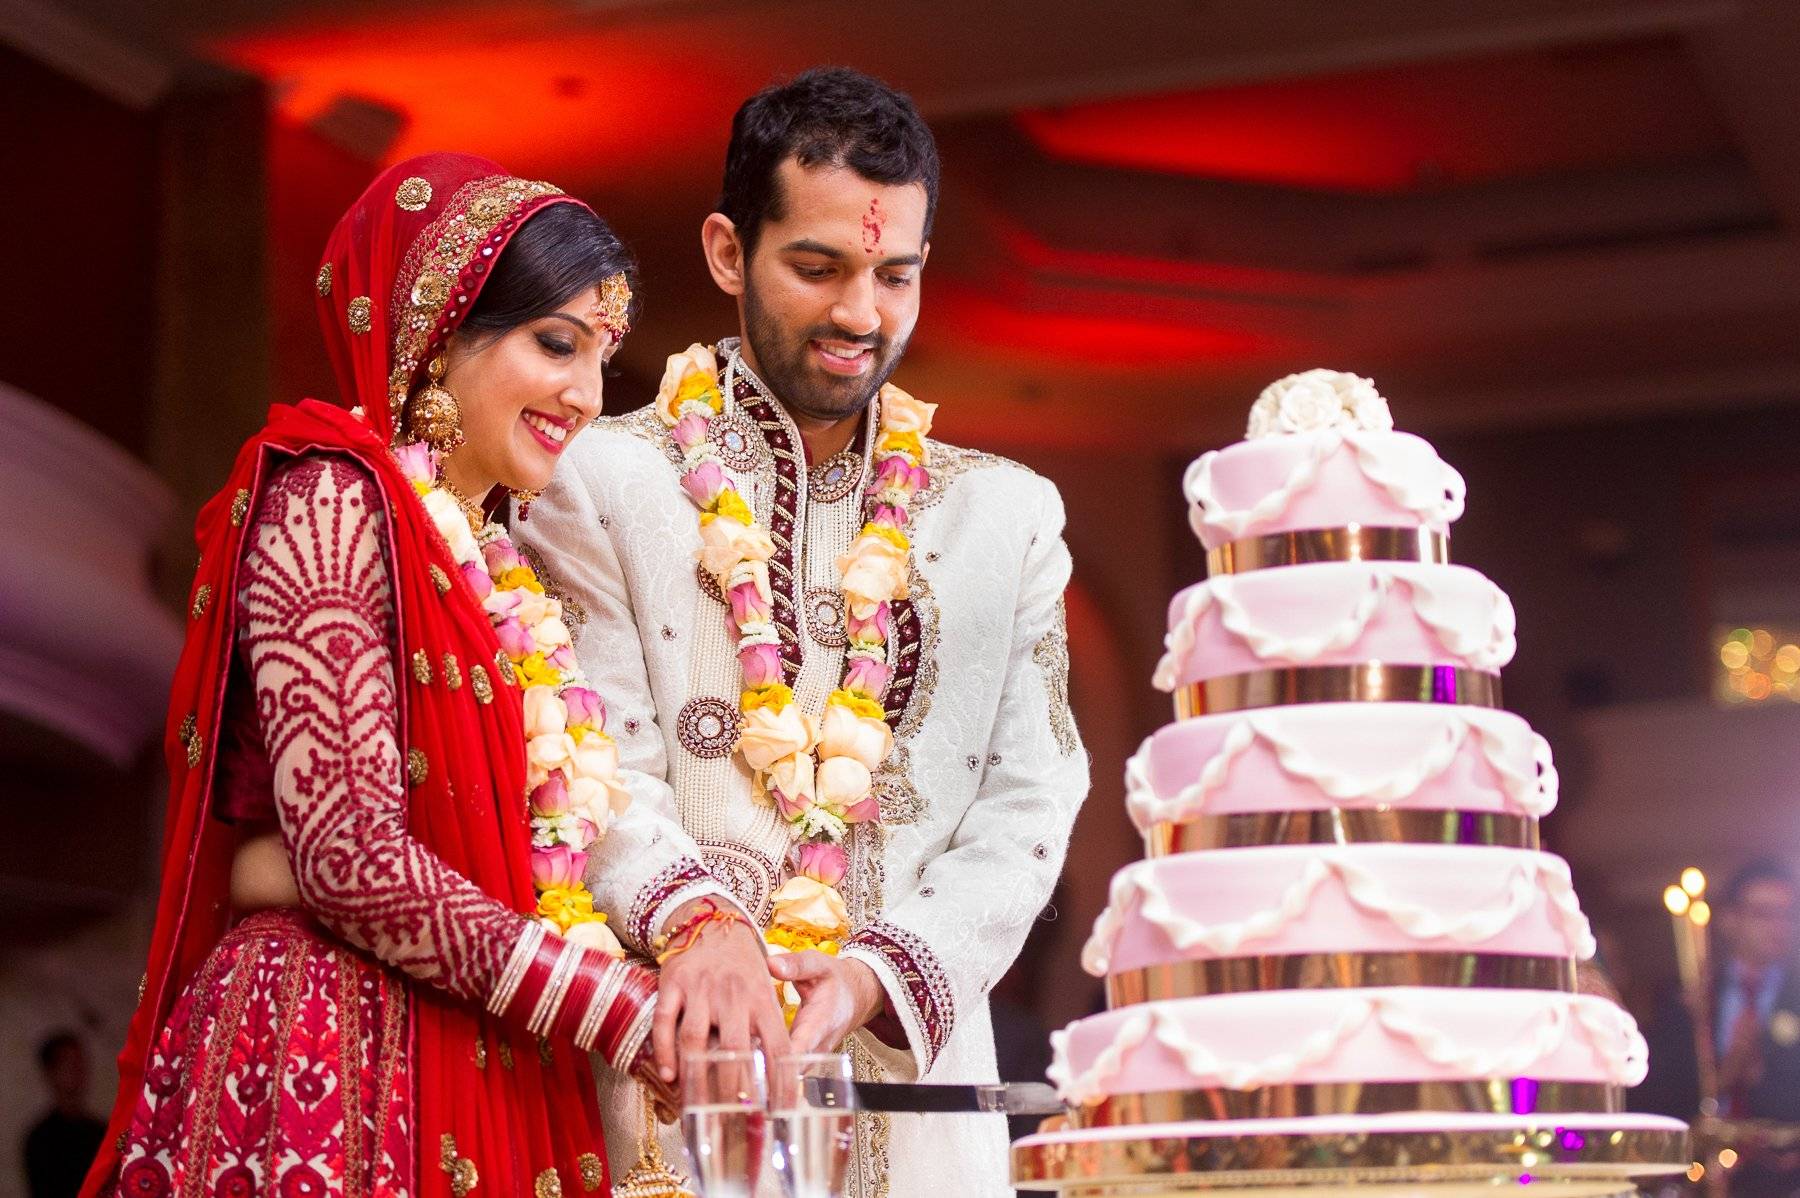 Как оформить и провести свадьбу в индийском стиле - идеи